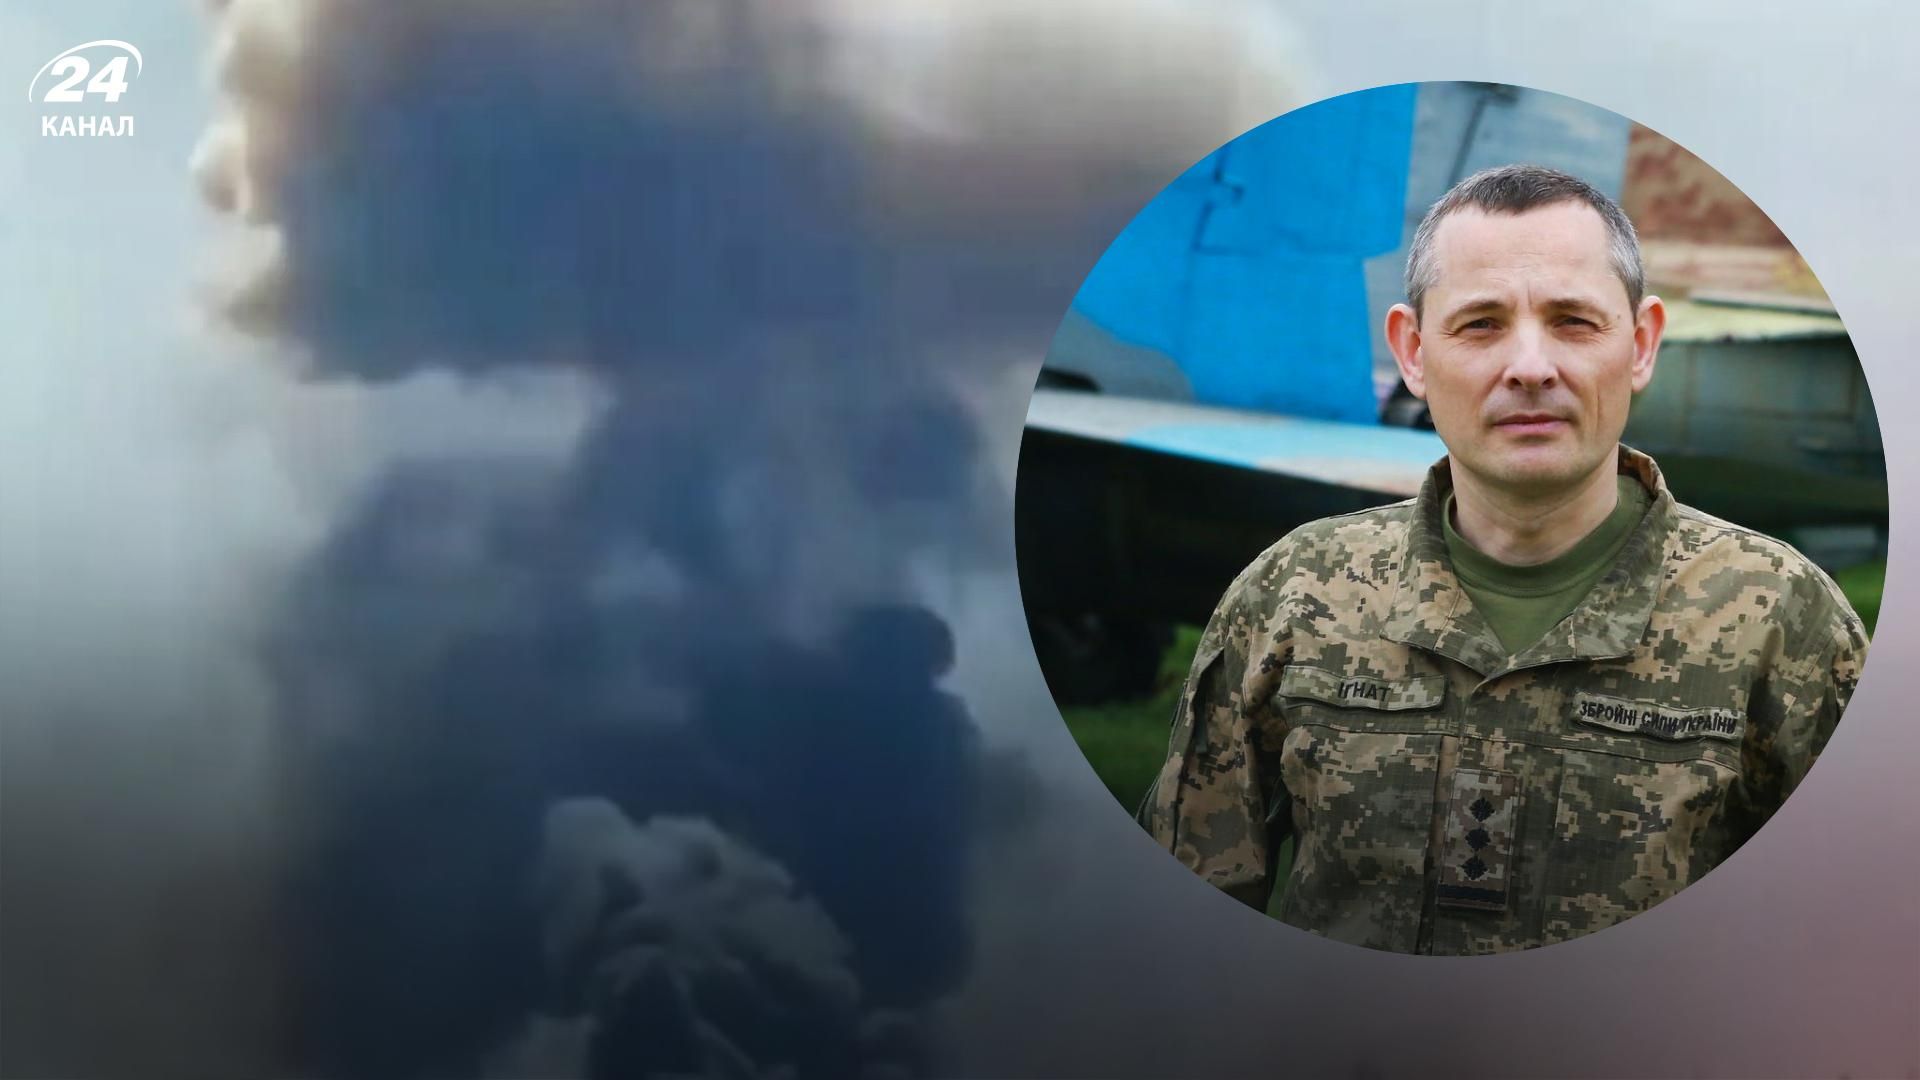 Взрыв на аэродроме Зябровка - Юрий Игнат поблагодарил белорусских партизанов за помощь